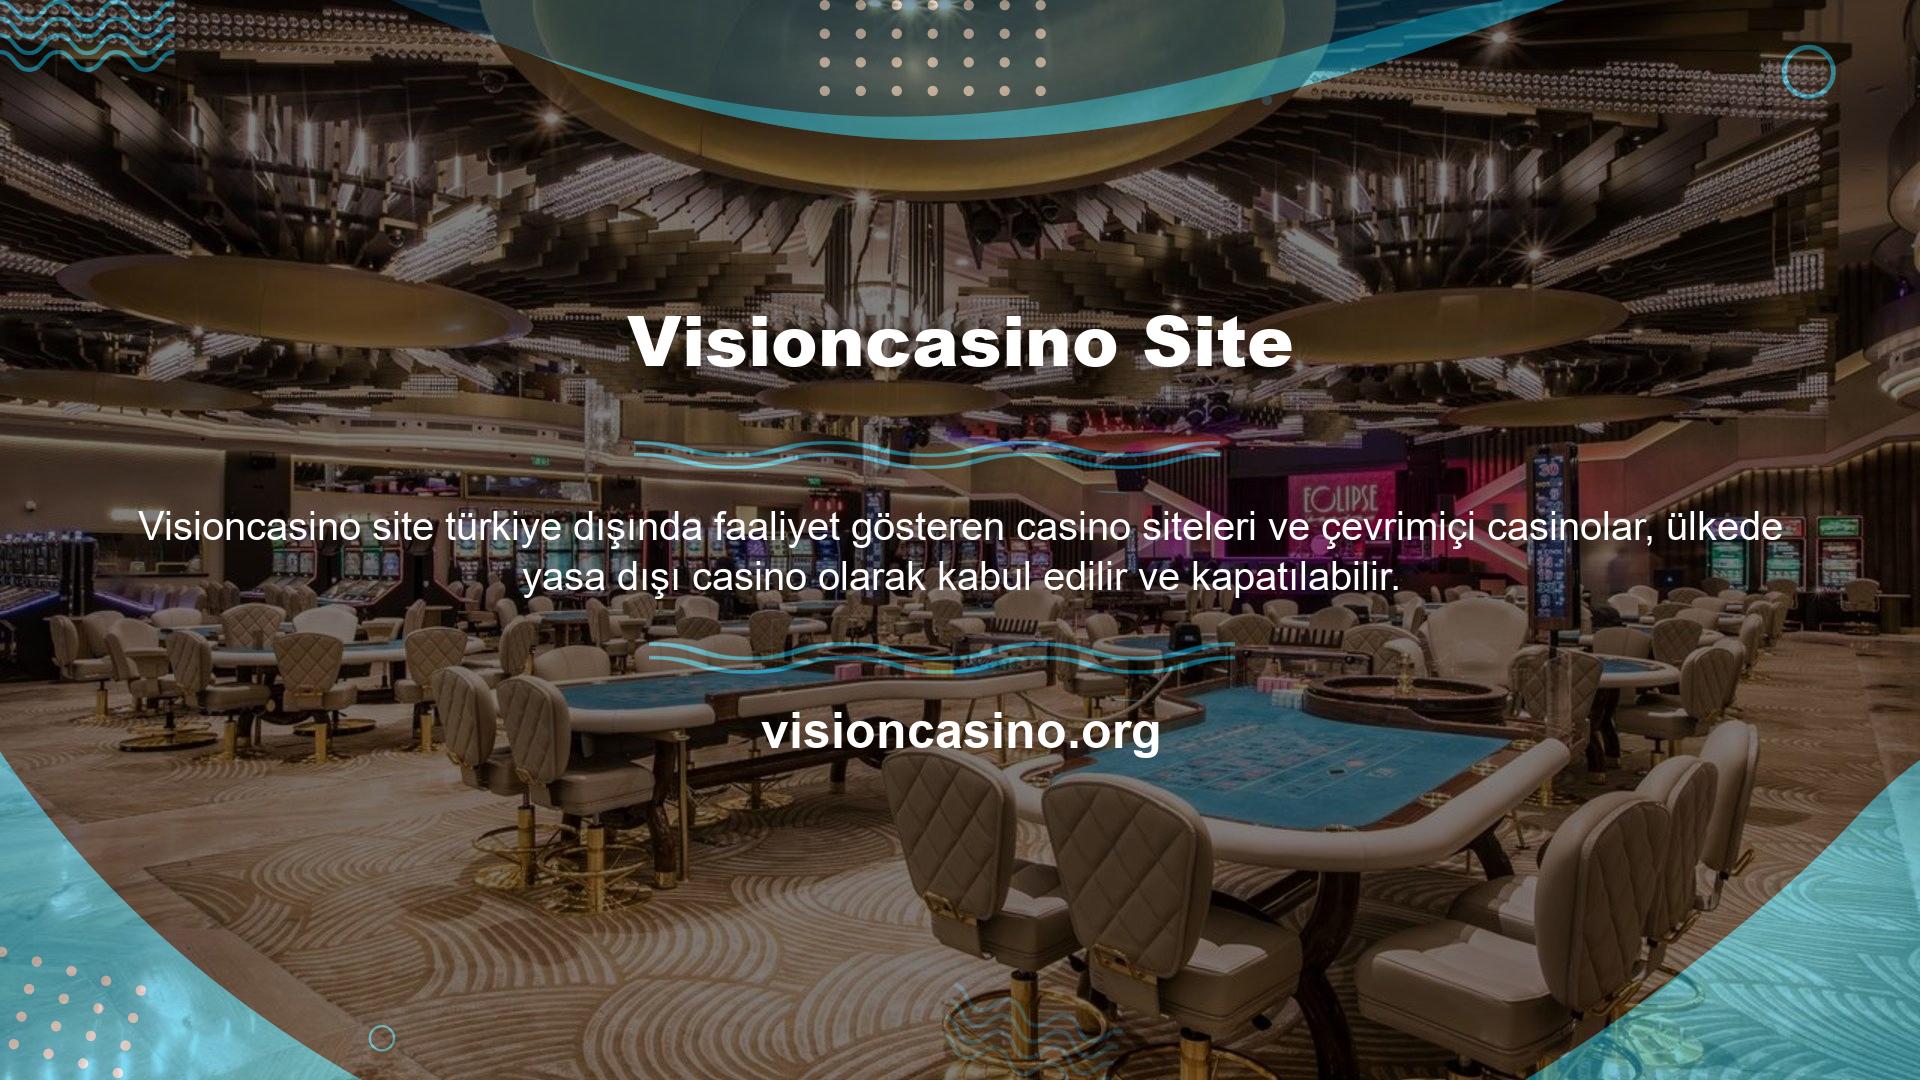 Visioncasino mevcut resmi adresi de mevcut adresinde kapatıldı